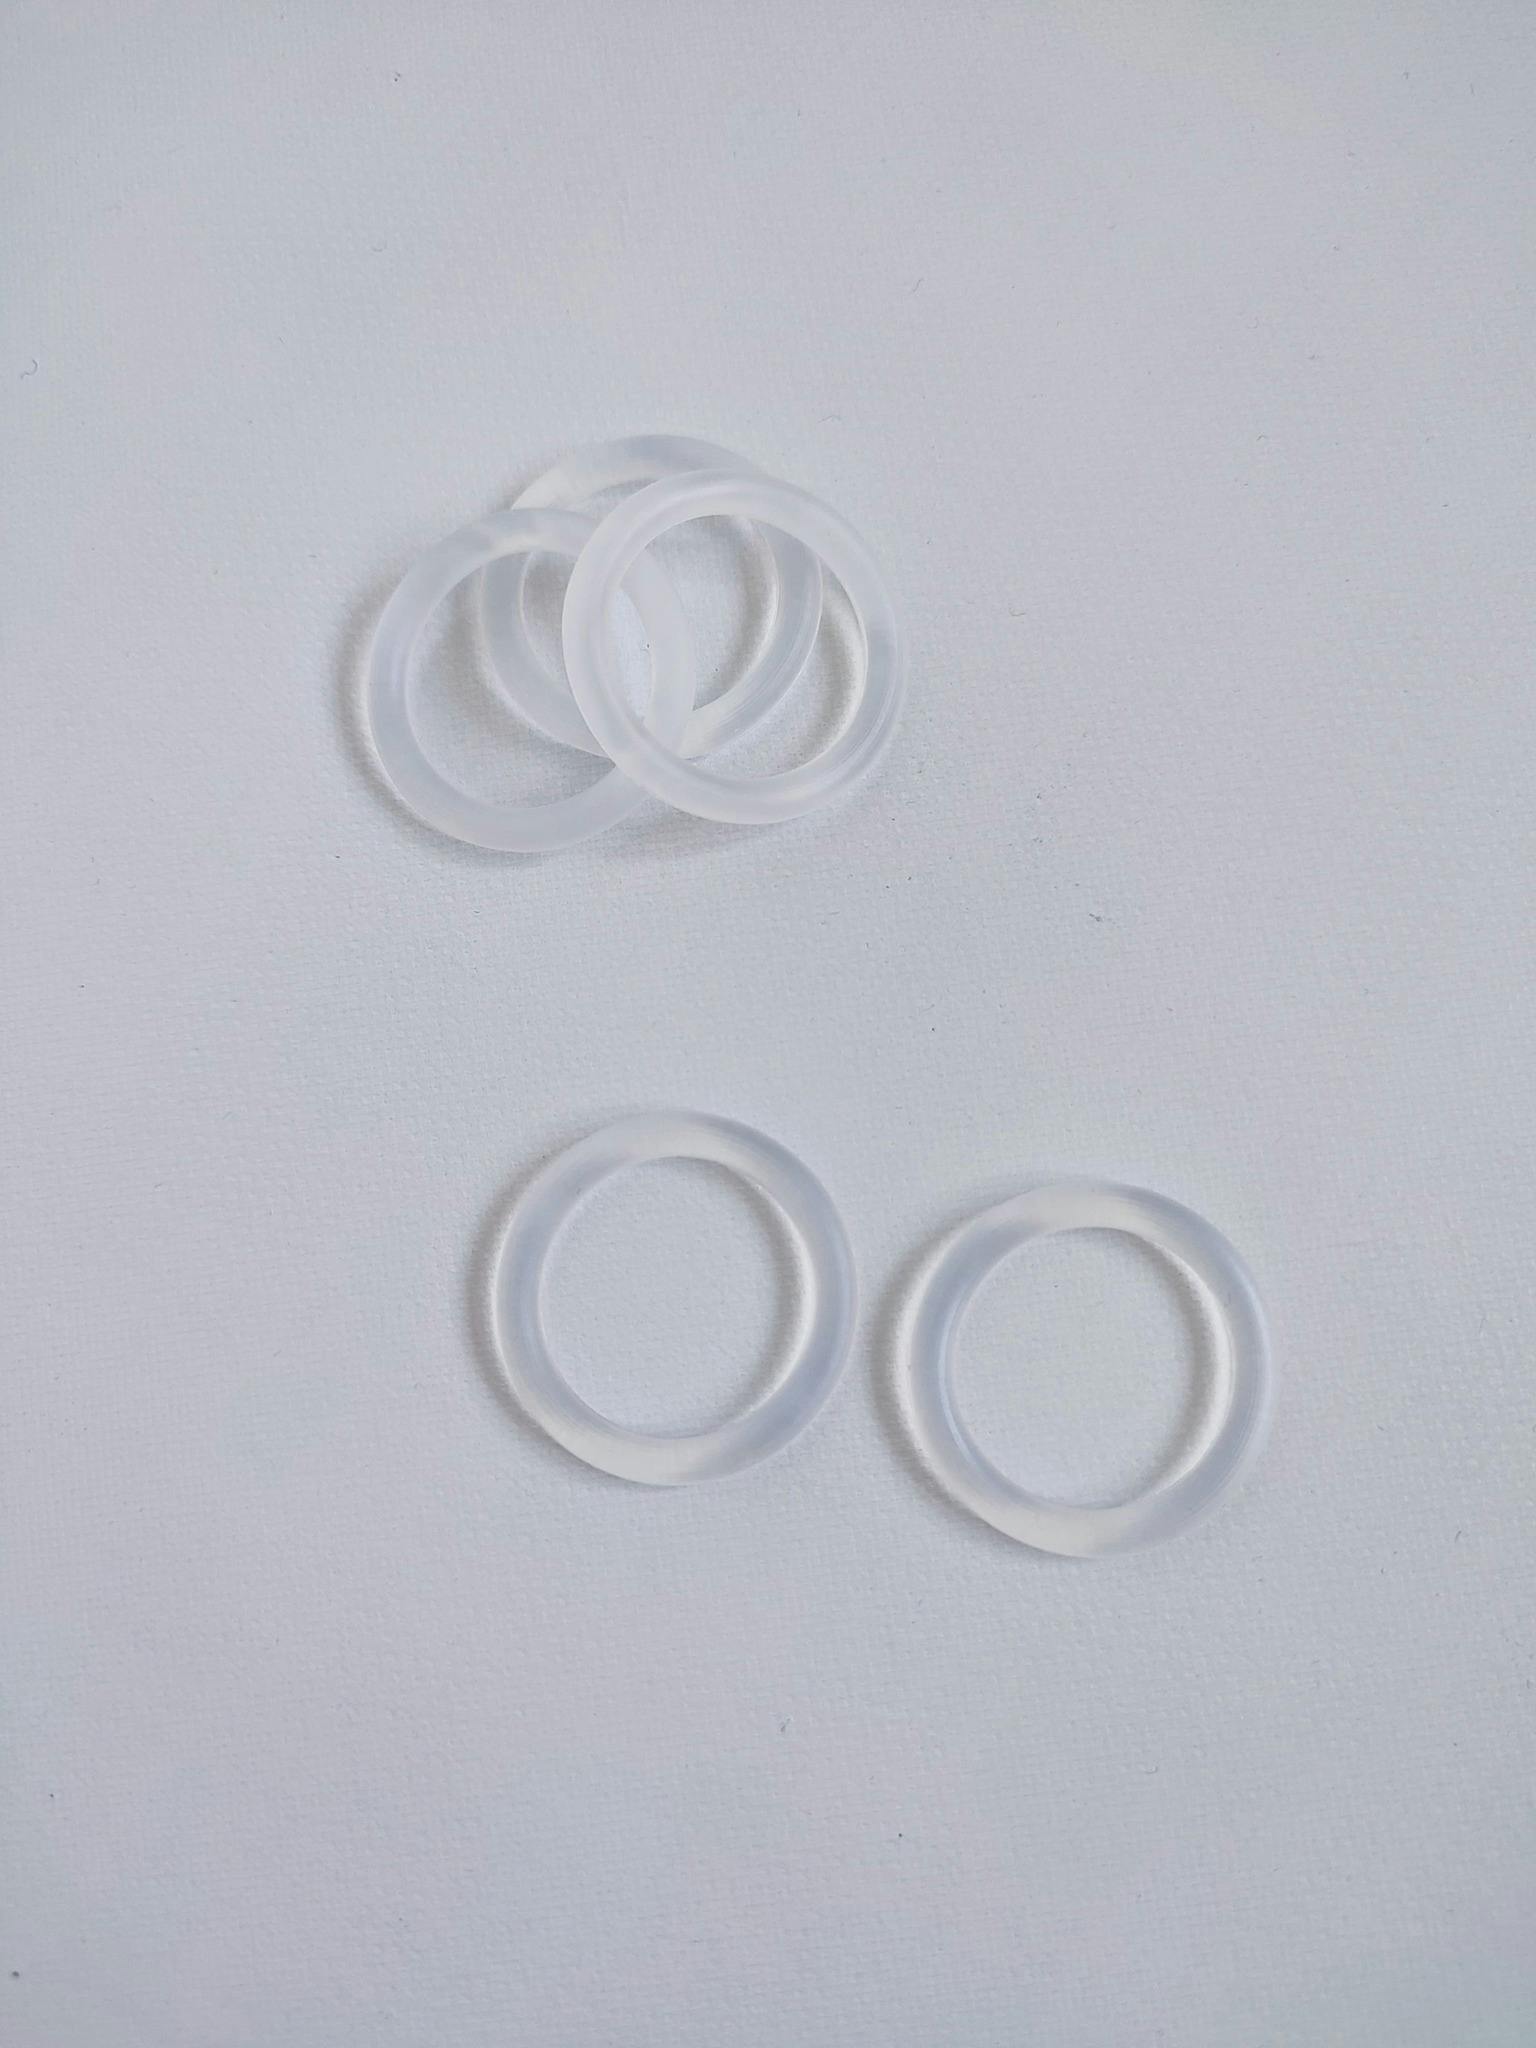 O-ring transparent